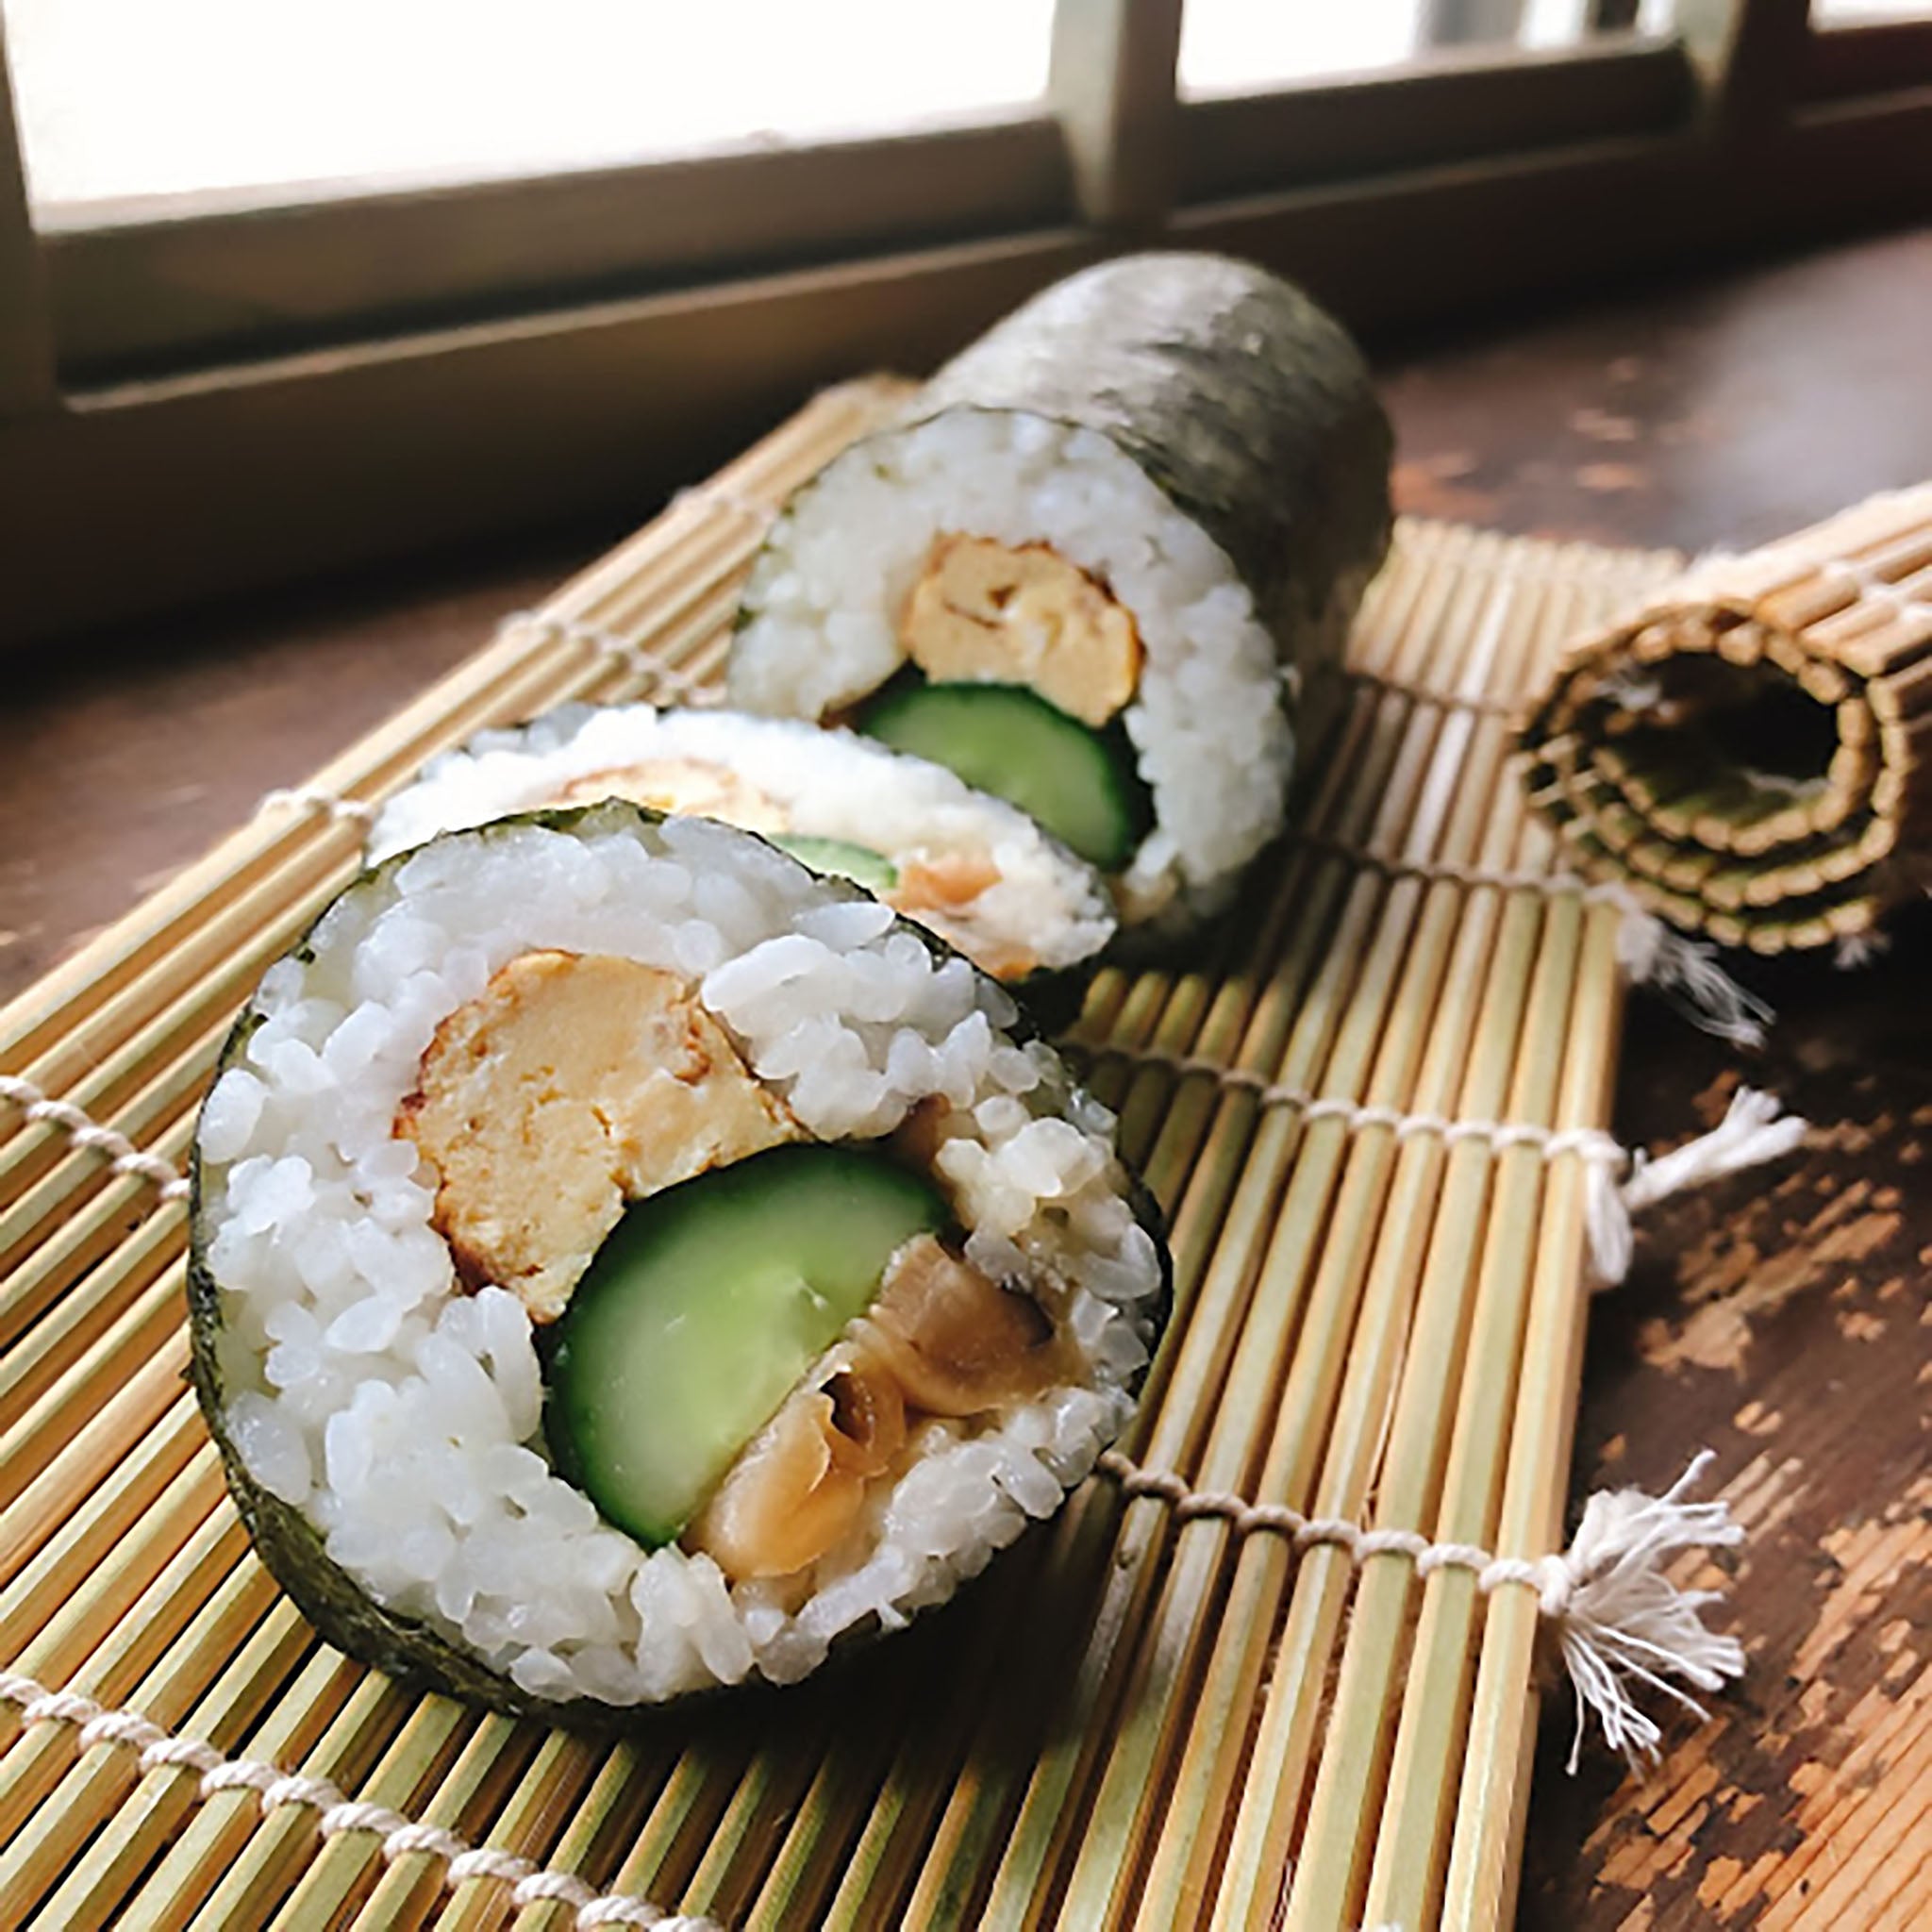 Classic Futomaki sushi & Seafood Futomaki sushi